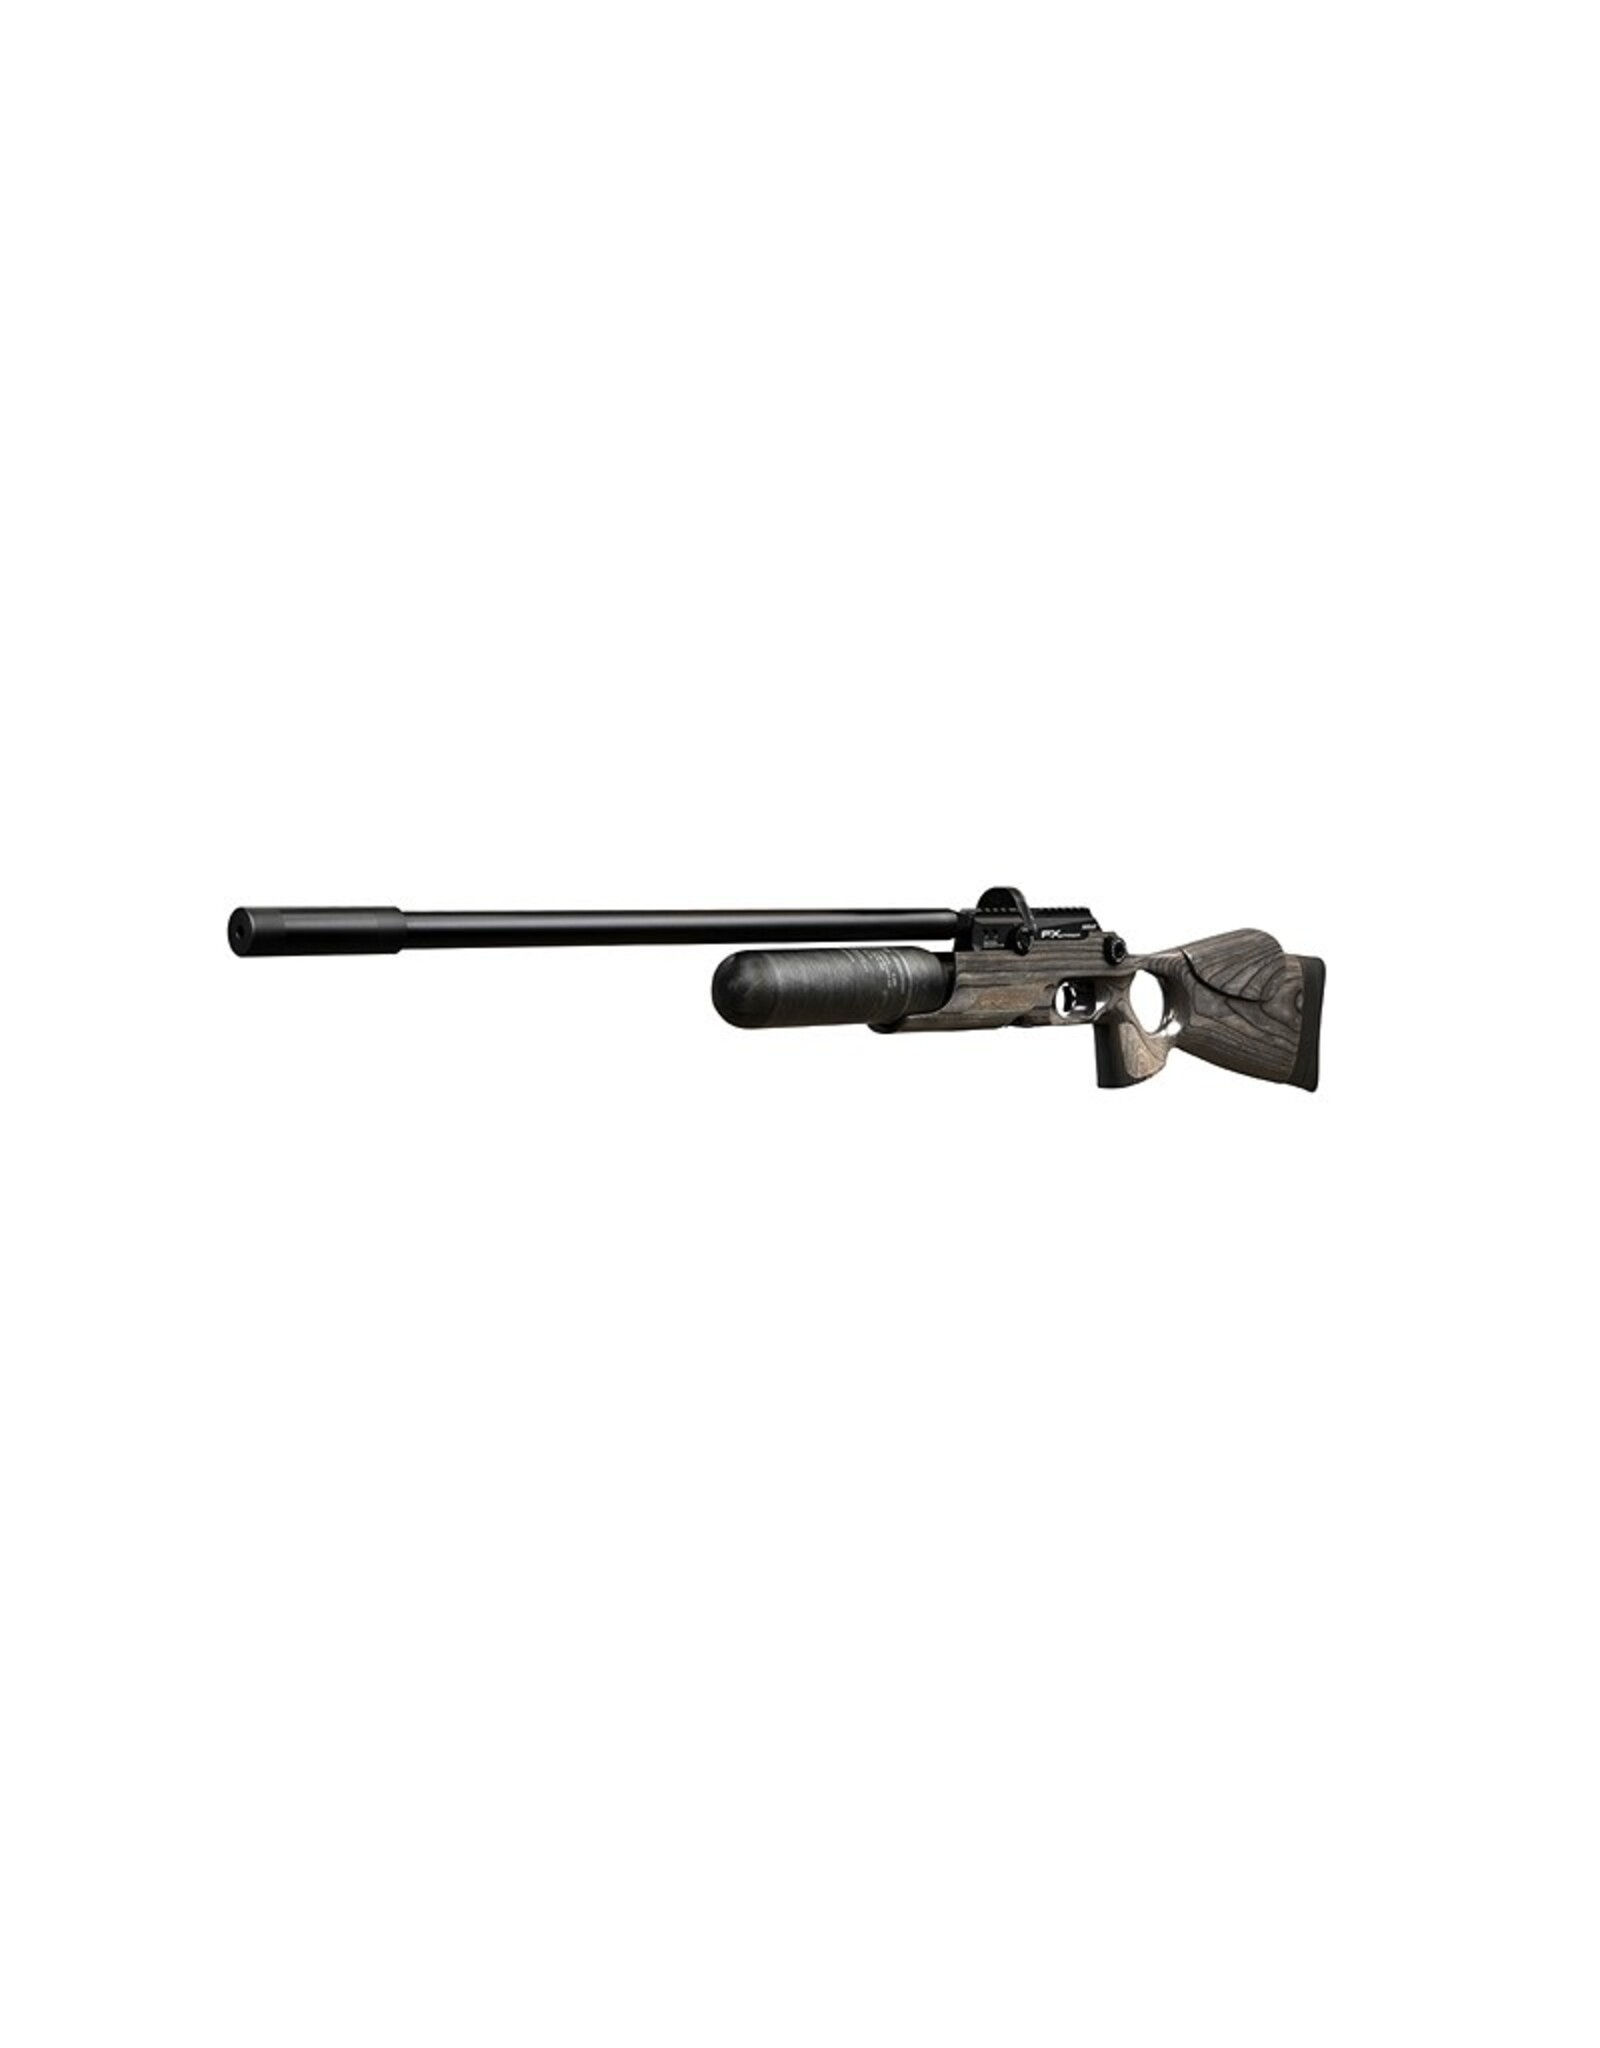 FX Airguns FX Crown MKII Standard, Black Pepper Laminate  - 0.30 caliber